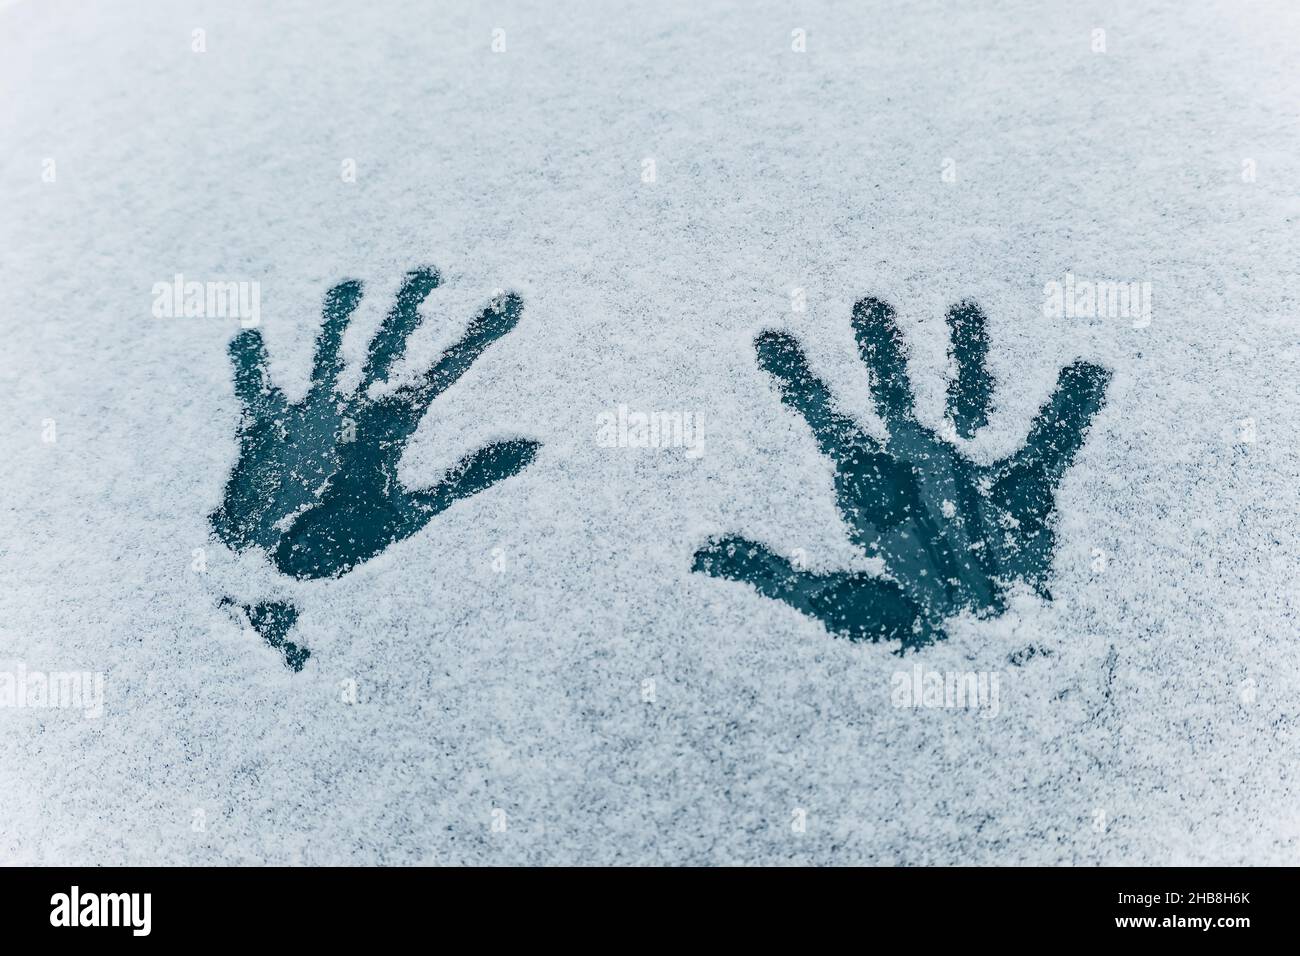 Impression de deux mains de paume sur la texture blanche de la neige.Deux empreintes humaines sur fond de verre bleu foncé gelé.Concept de plaisir d'hiver et temps froid Banque D'Images